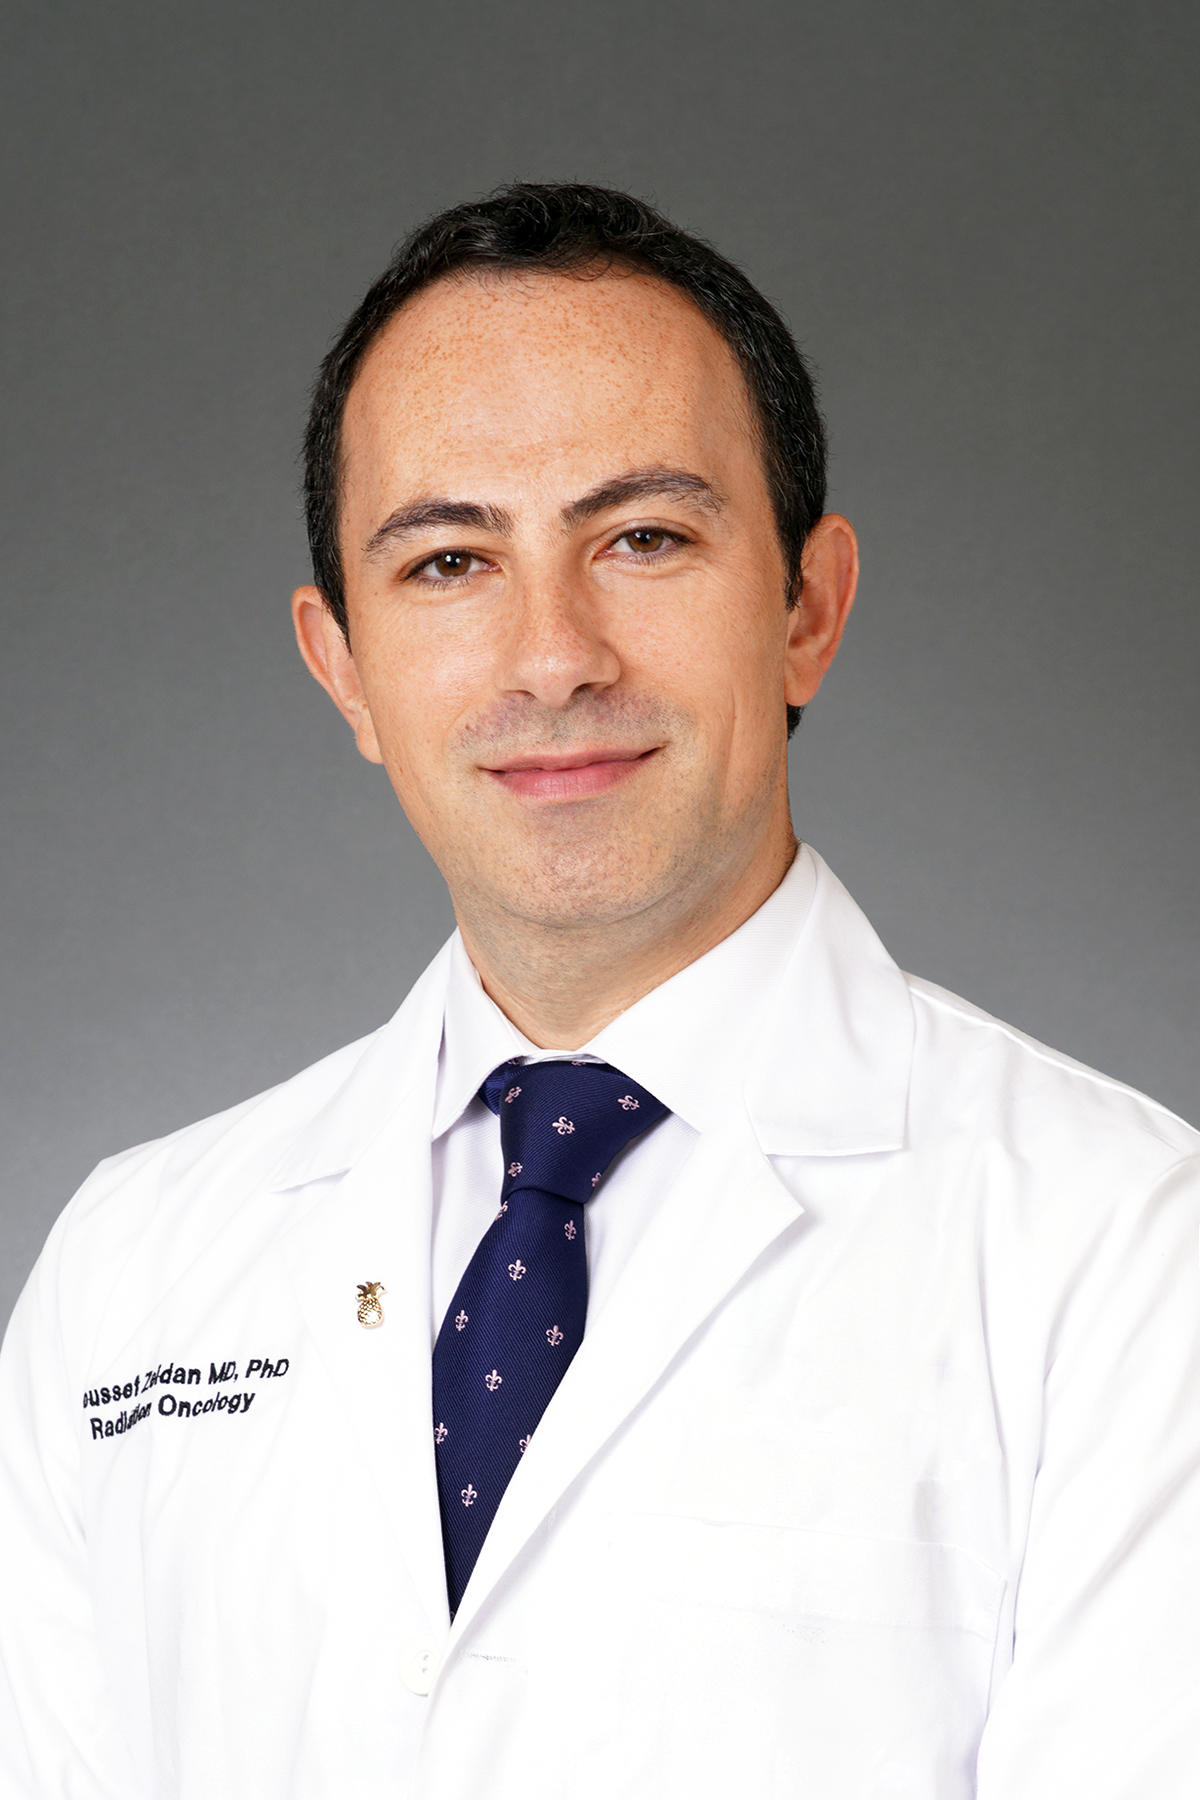 Dr. Youssef Hussein Zeidan